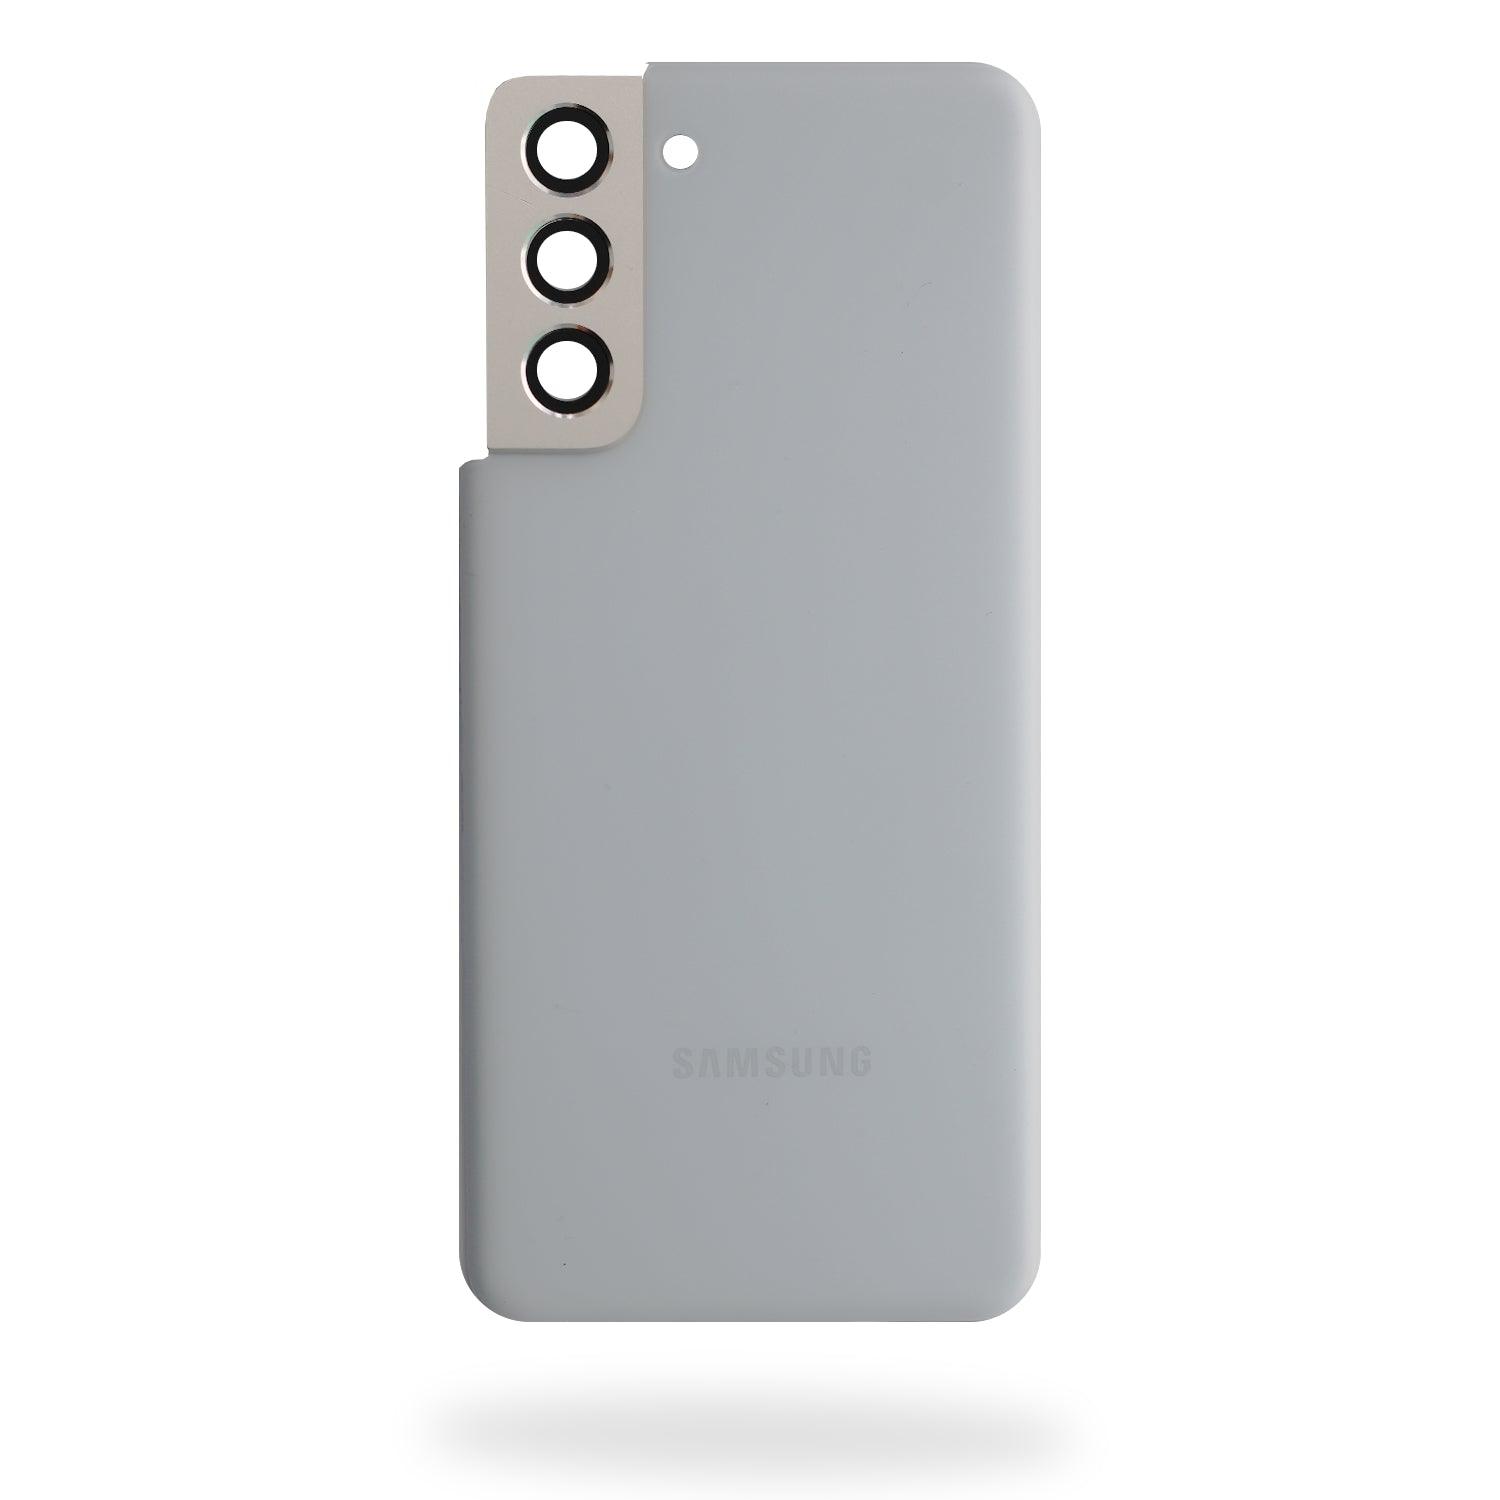 Tapa Trasera Samsung S21 5G G991b a solo $ 100.00 Refaccion y puestos celulares, refurbish y microelectronica.- FixOEM